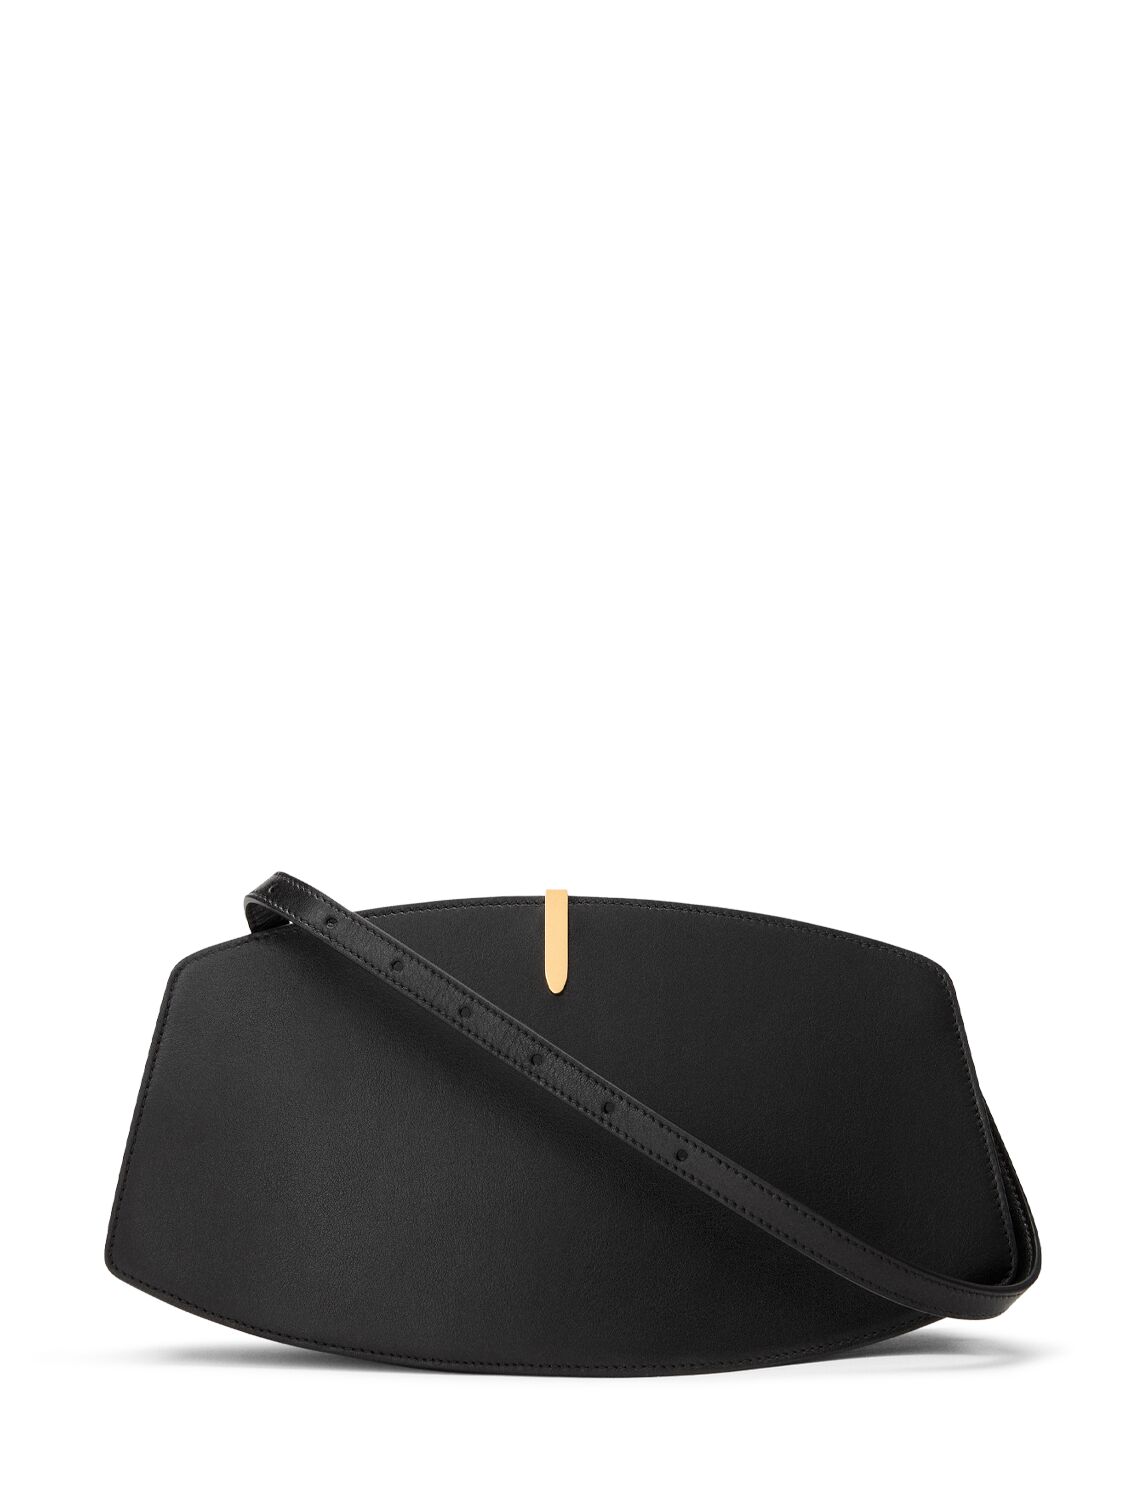 Savette Florence Leather Shoulder Bag In Black